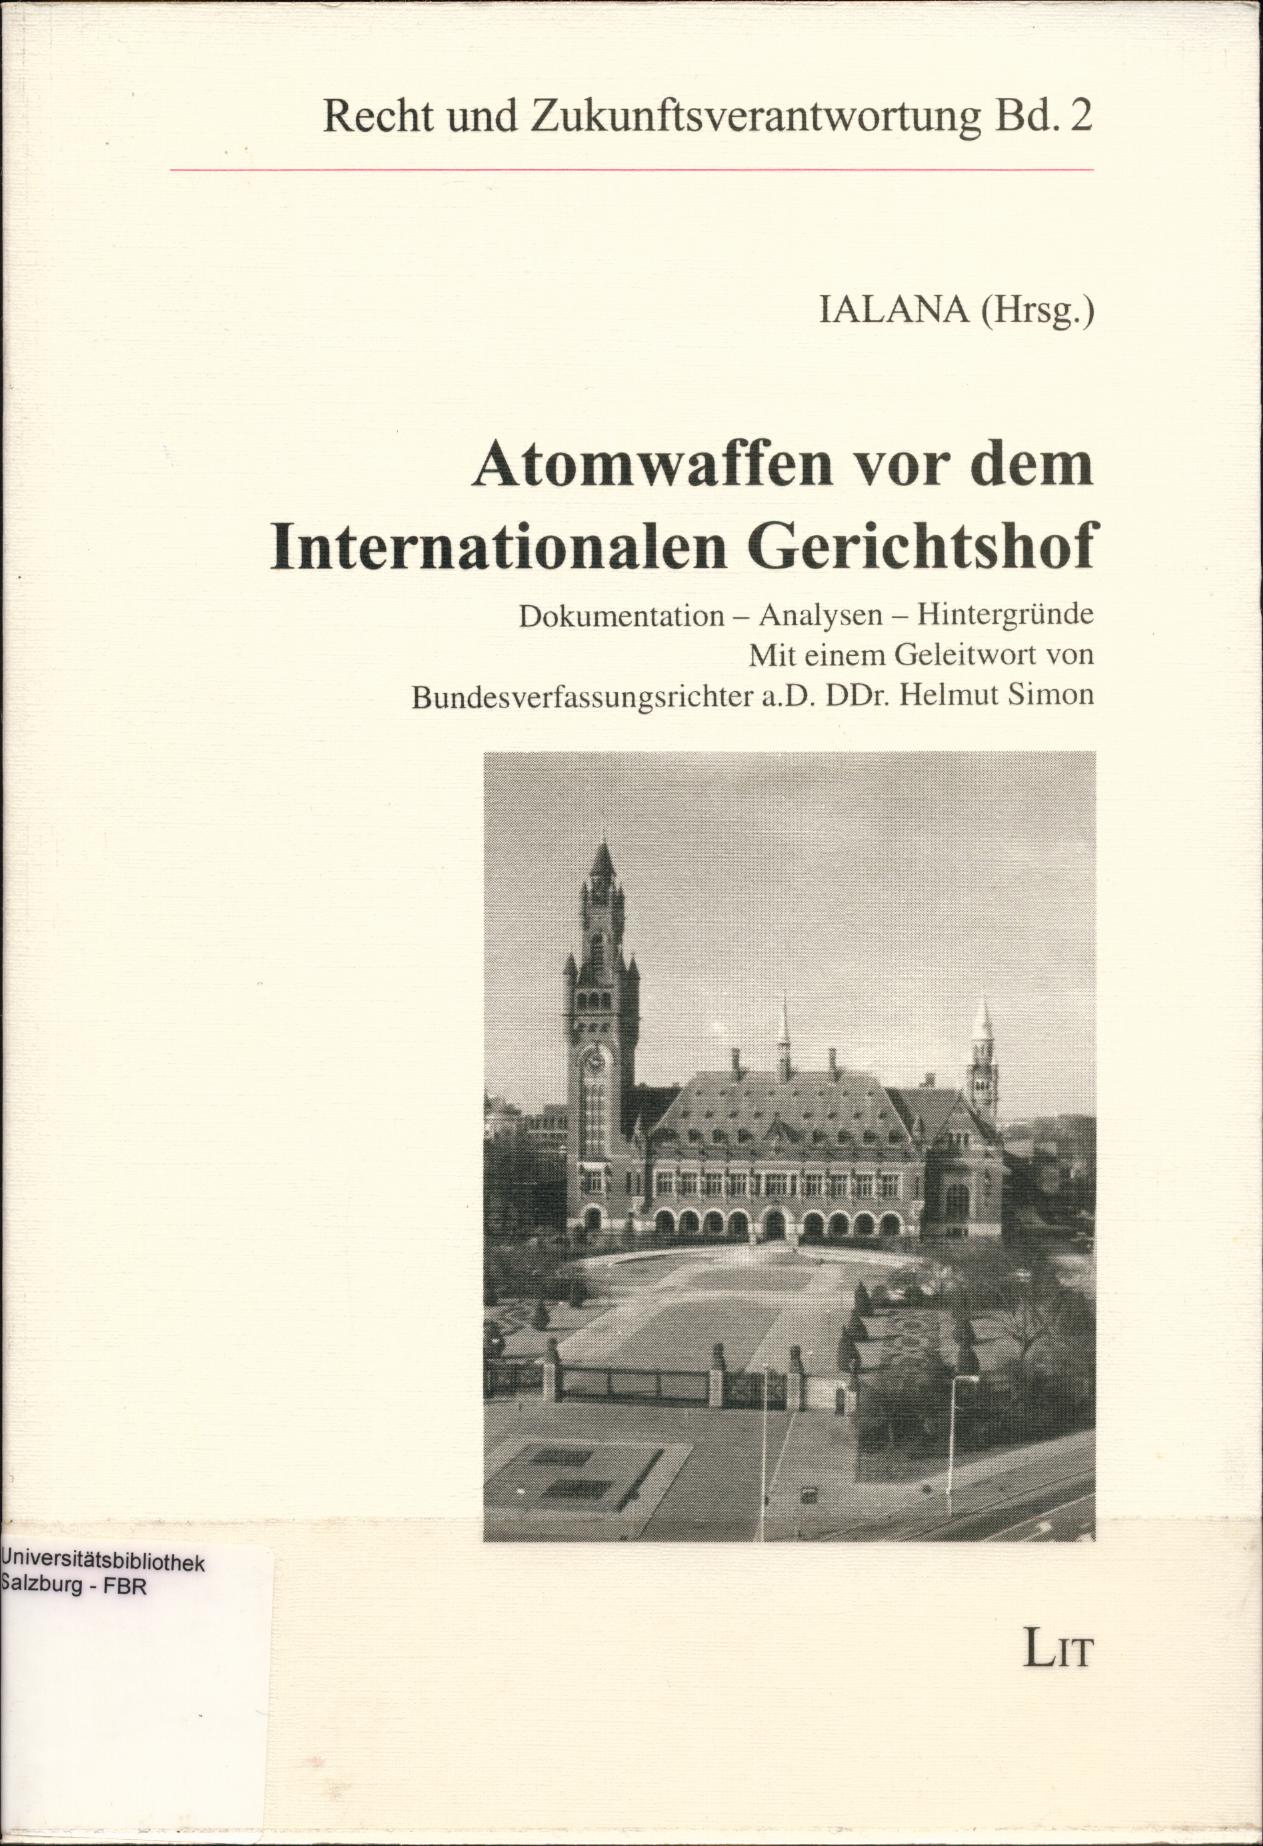 Atomwaffen vor dem Internationalen Gerichtshof Dokumentation - Analysen - Hintergründe - Simon, Helmut und Helmut Simon